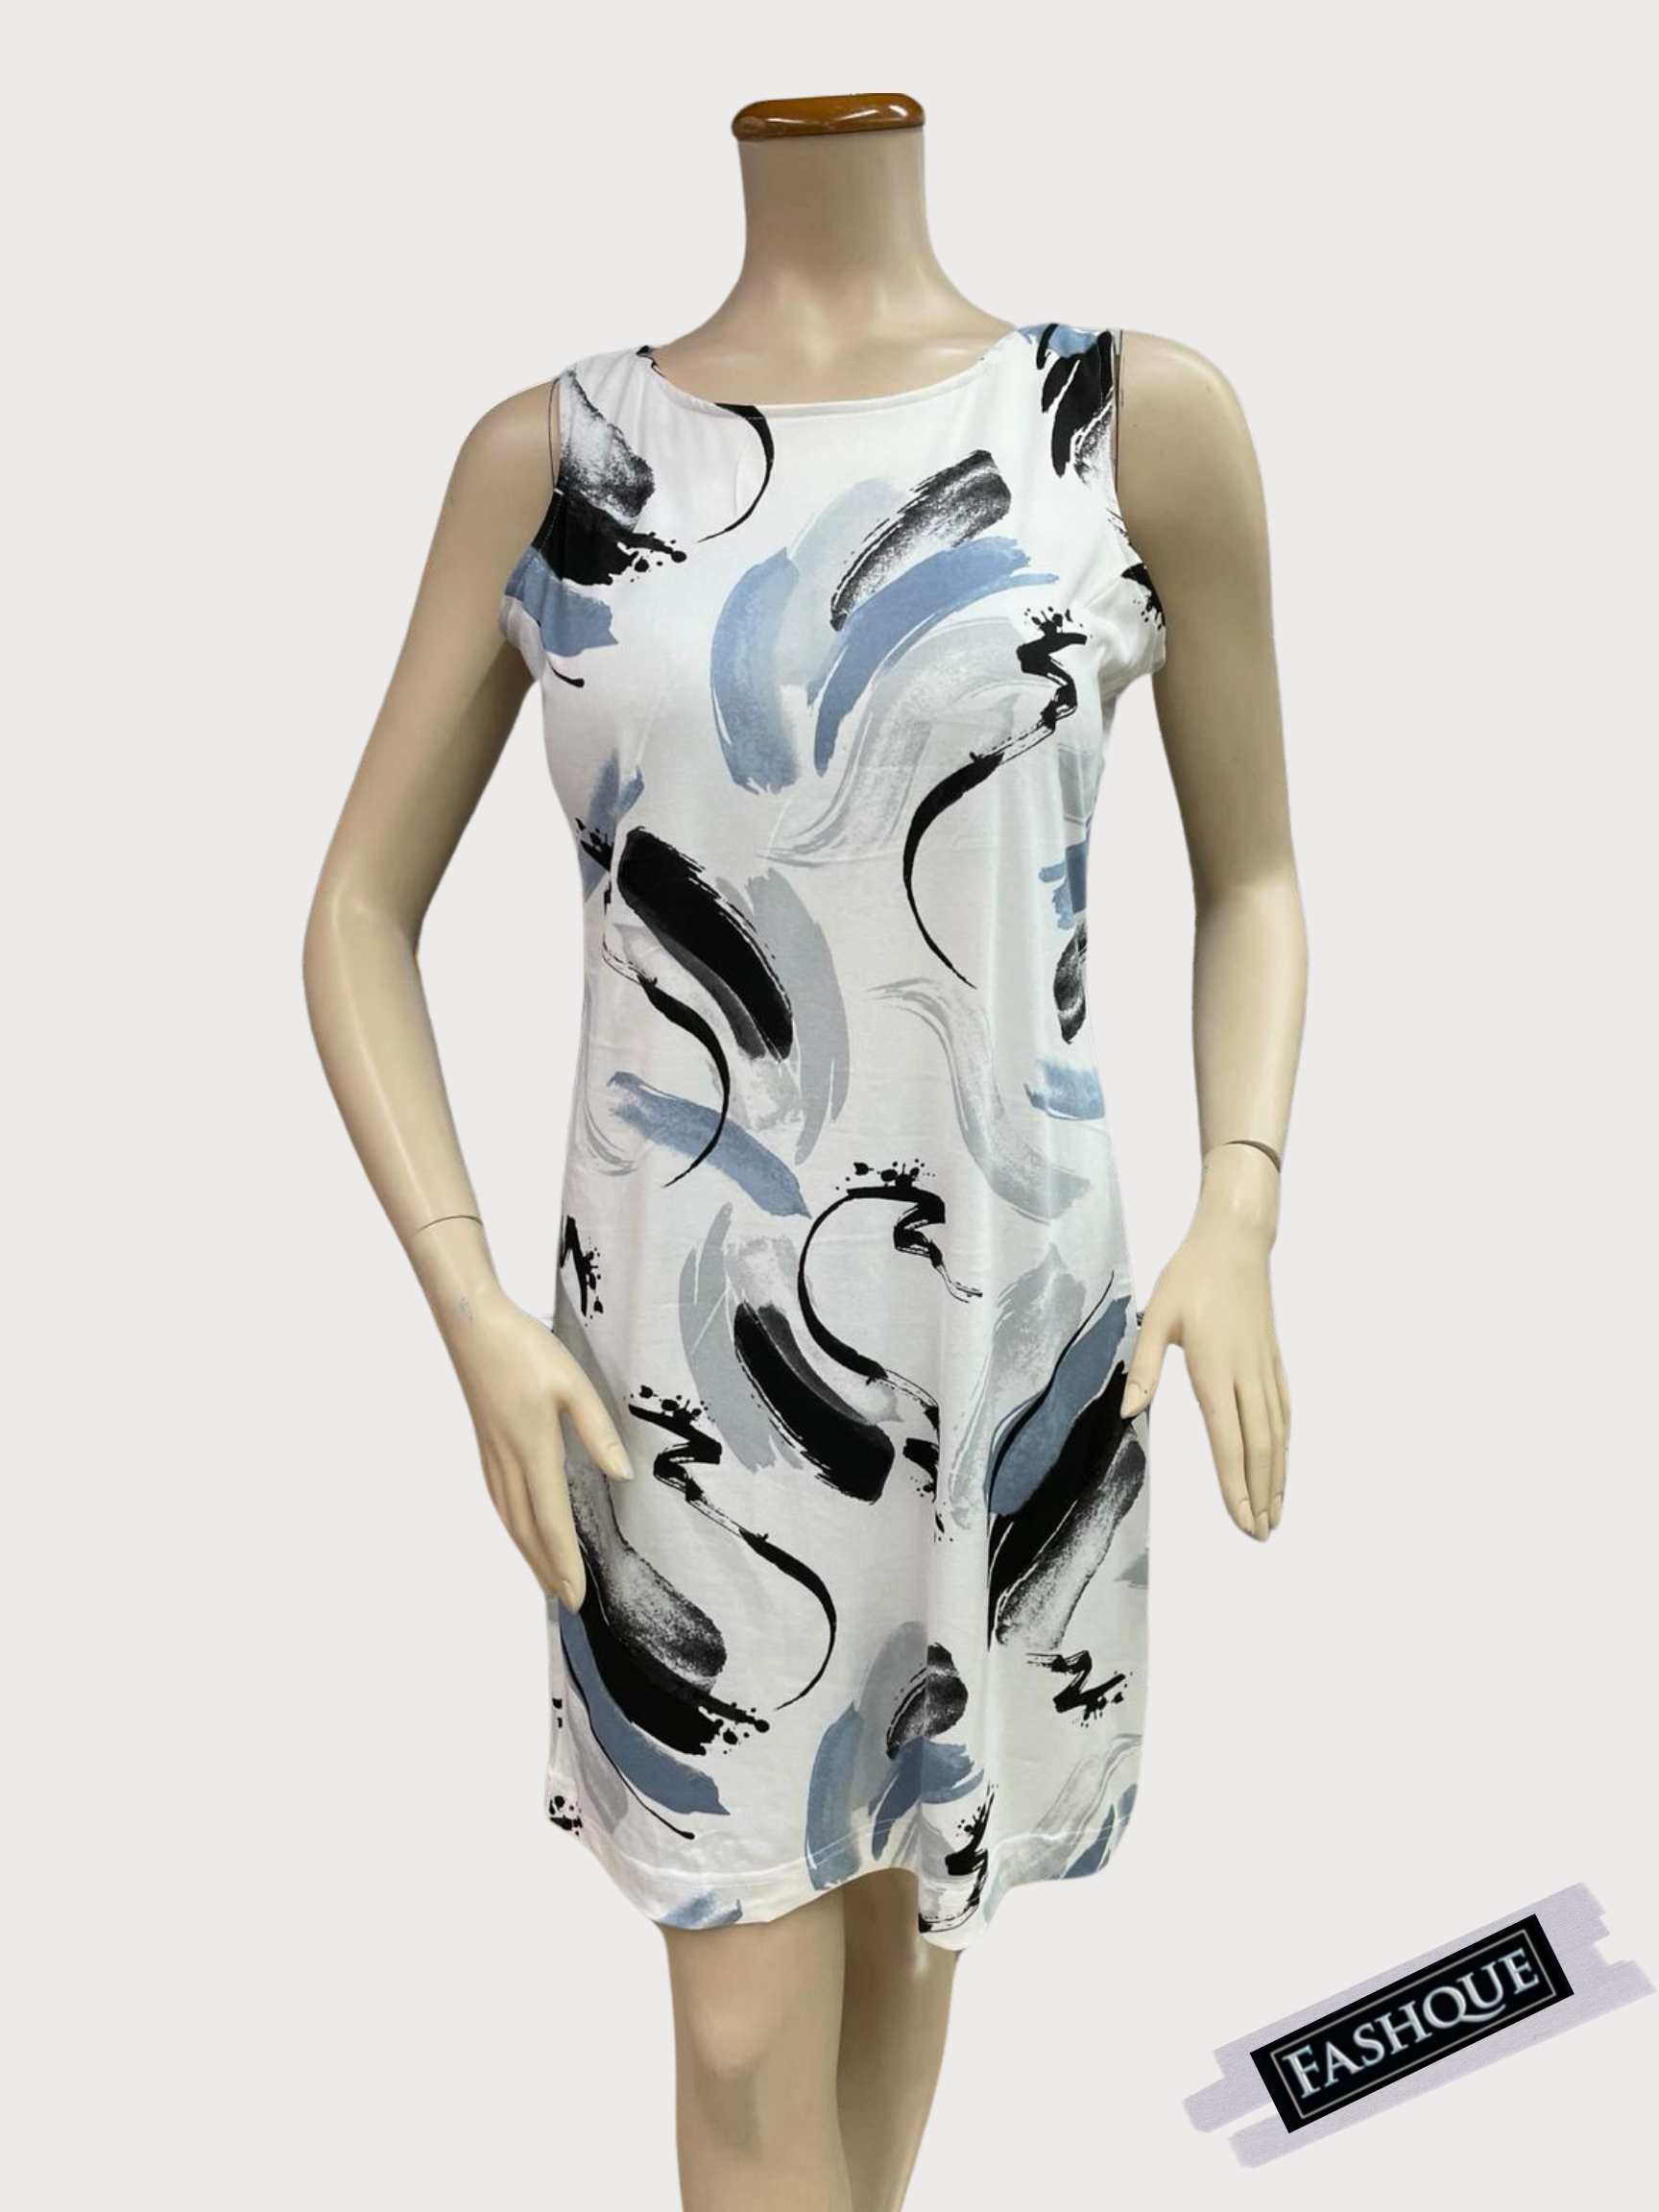 Boat Neck Sleeveless short Dress for Women - D095